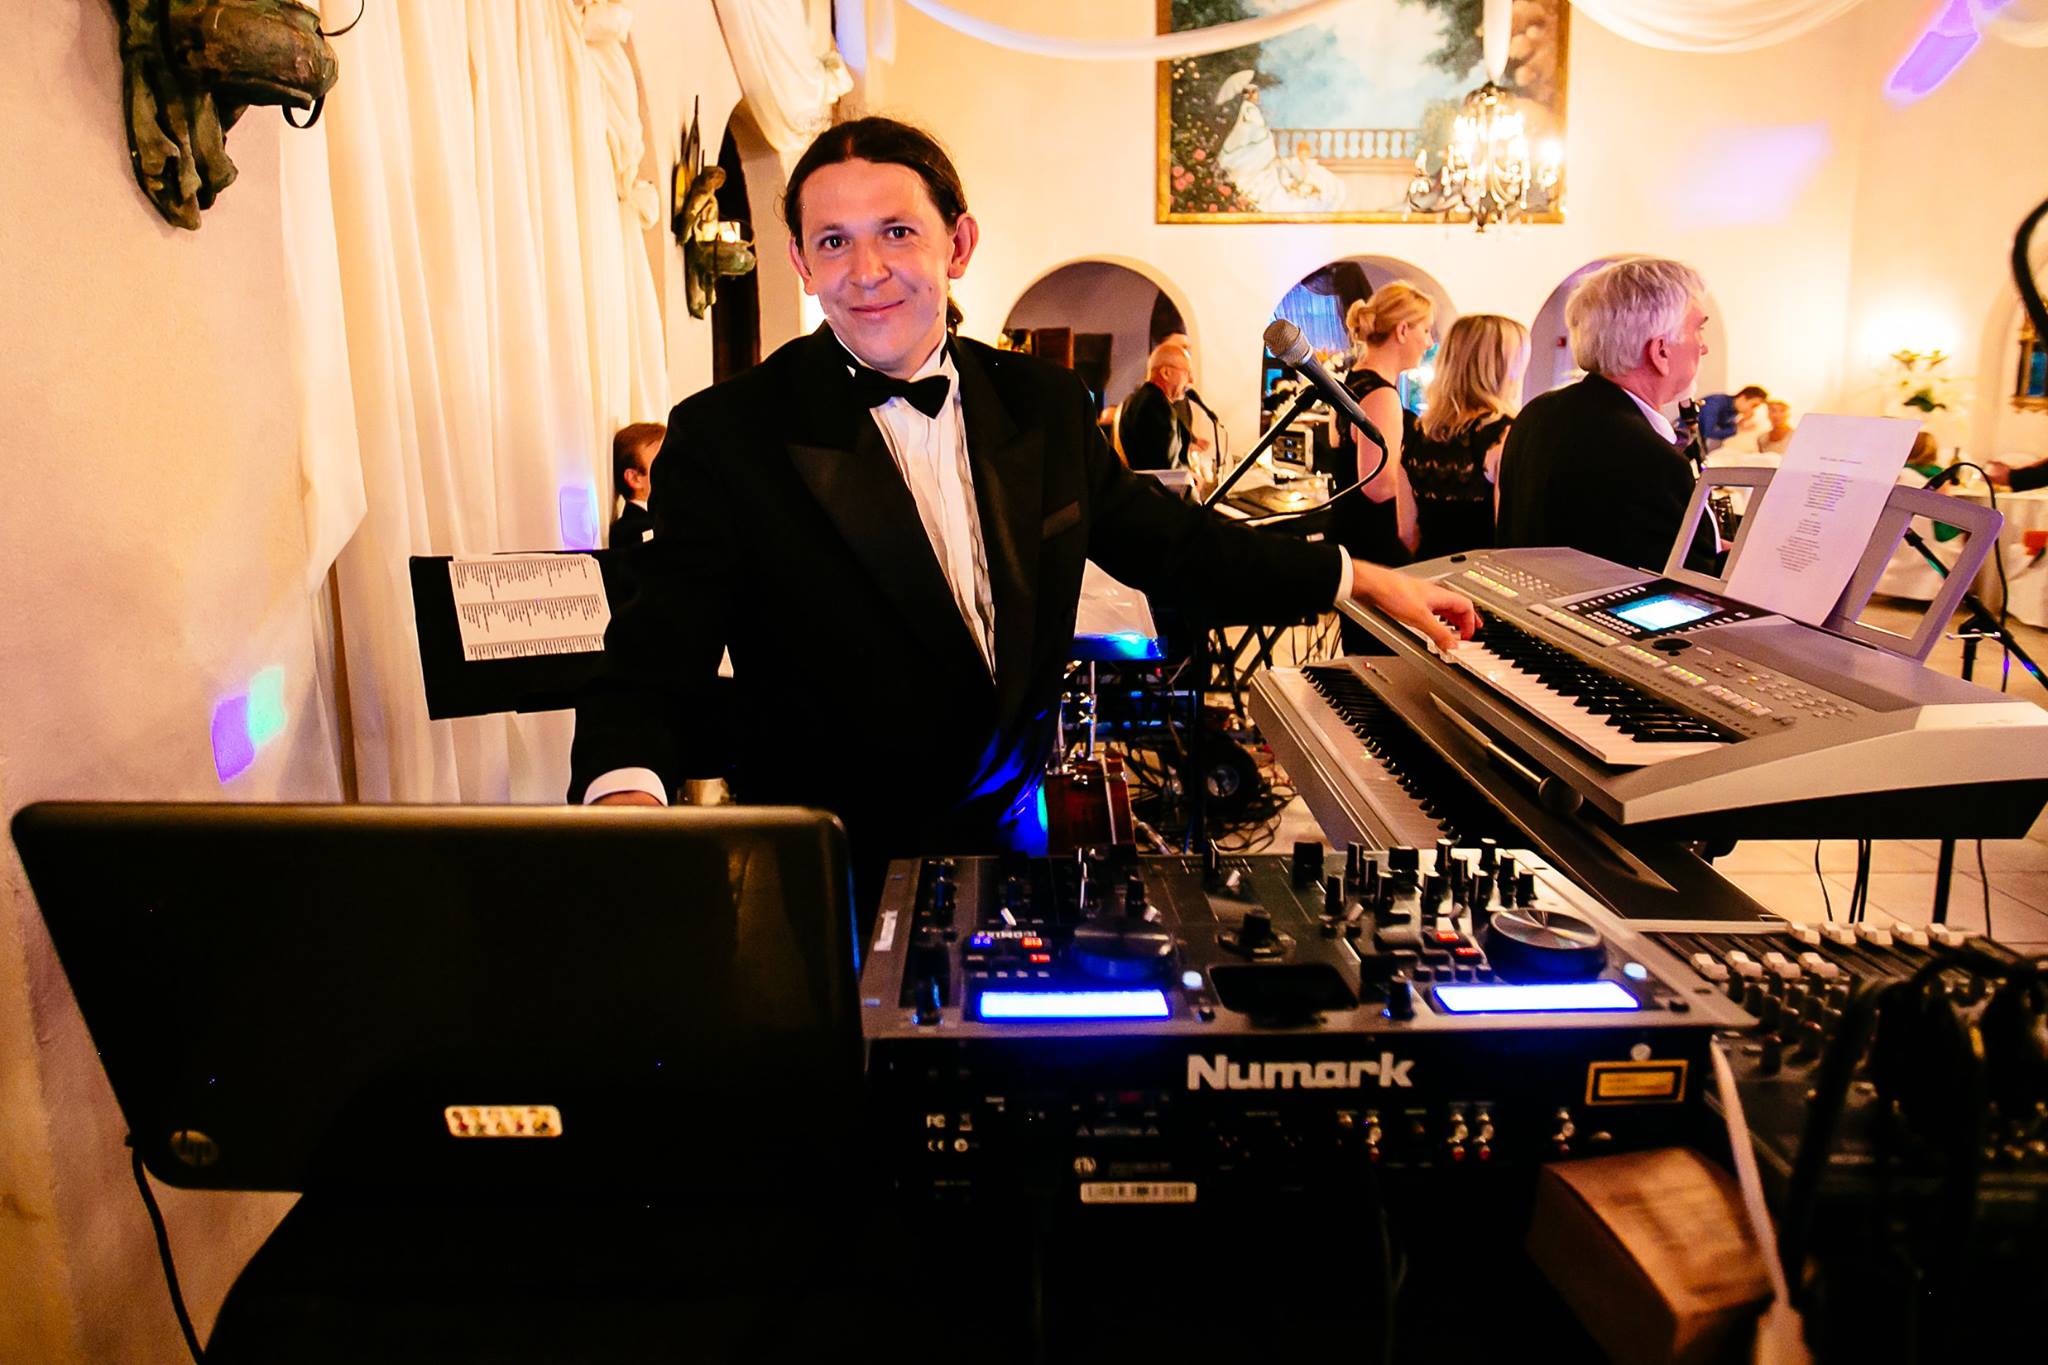 Polski DJ na polonijne imprezy w NY, NJ, PA i CT. DJ Halat